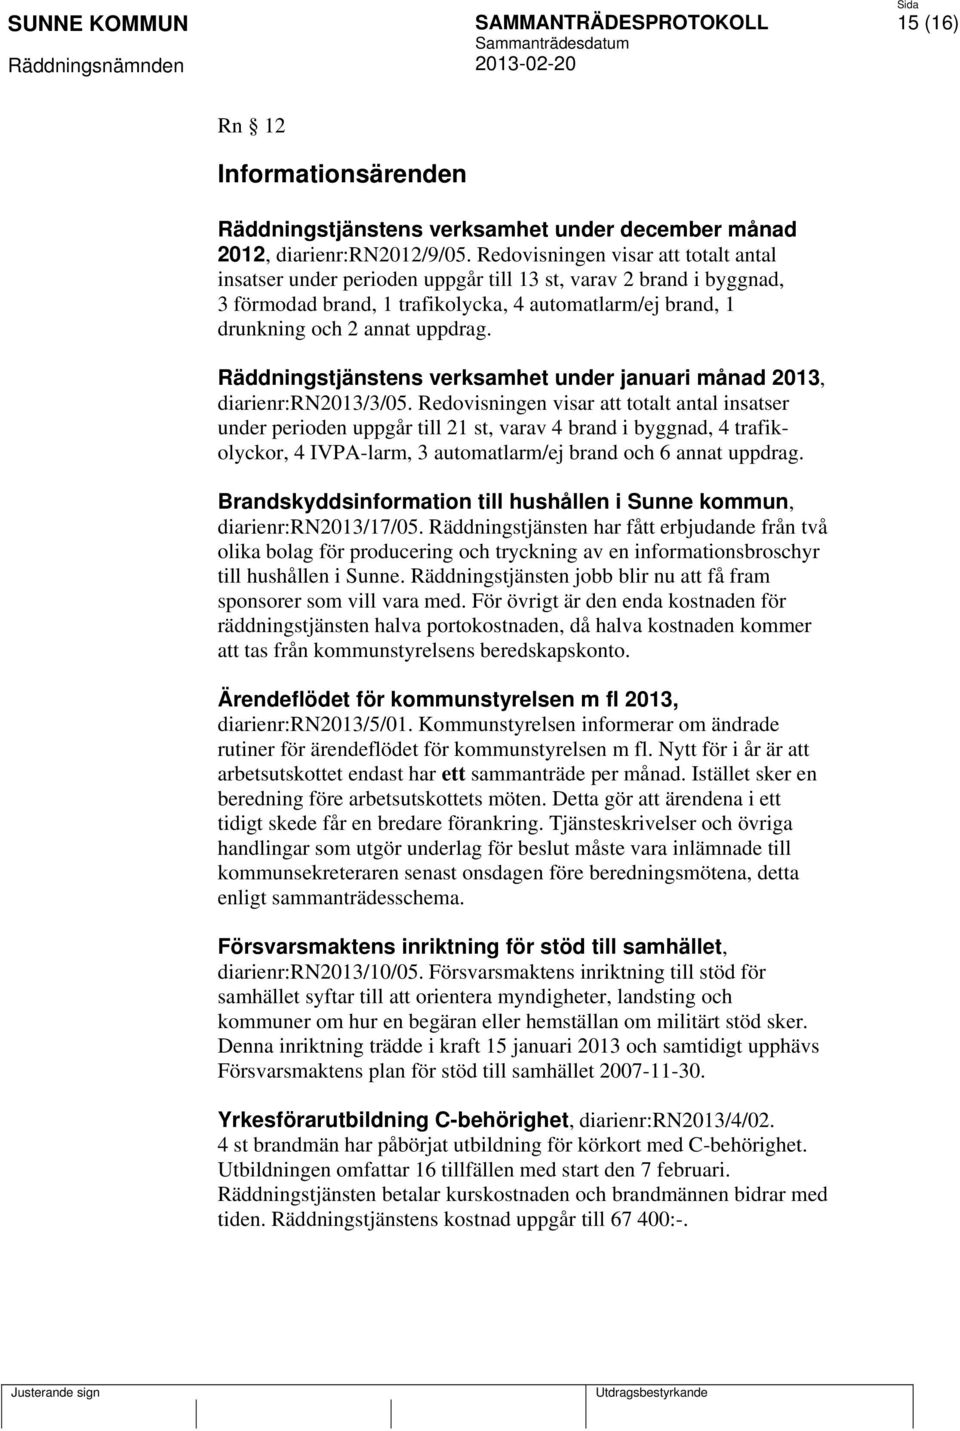 Räddningstjänstens verksamhet under januari månad 2013, diarienr:rn2013/3/05.